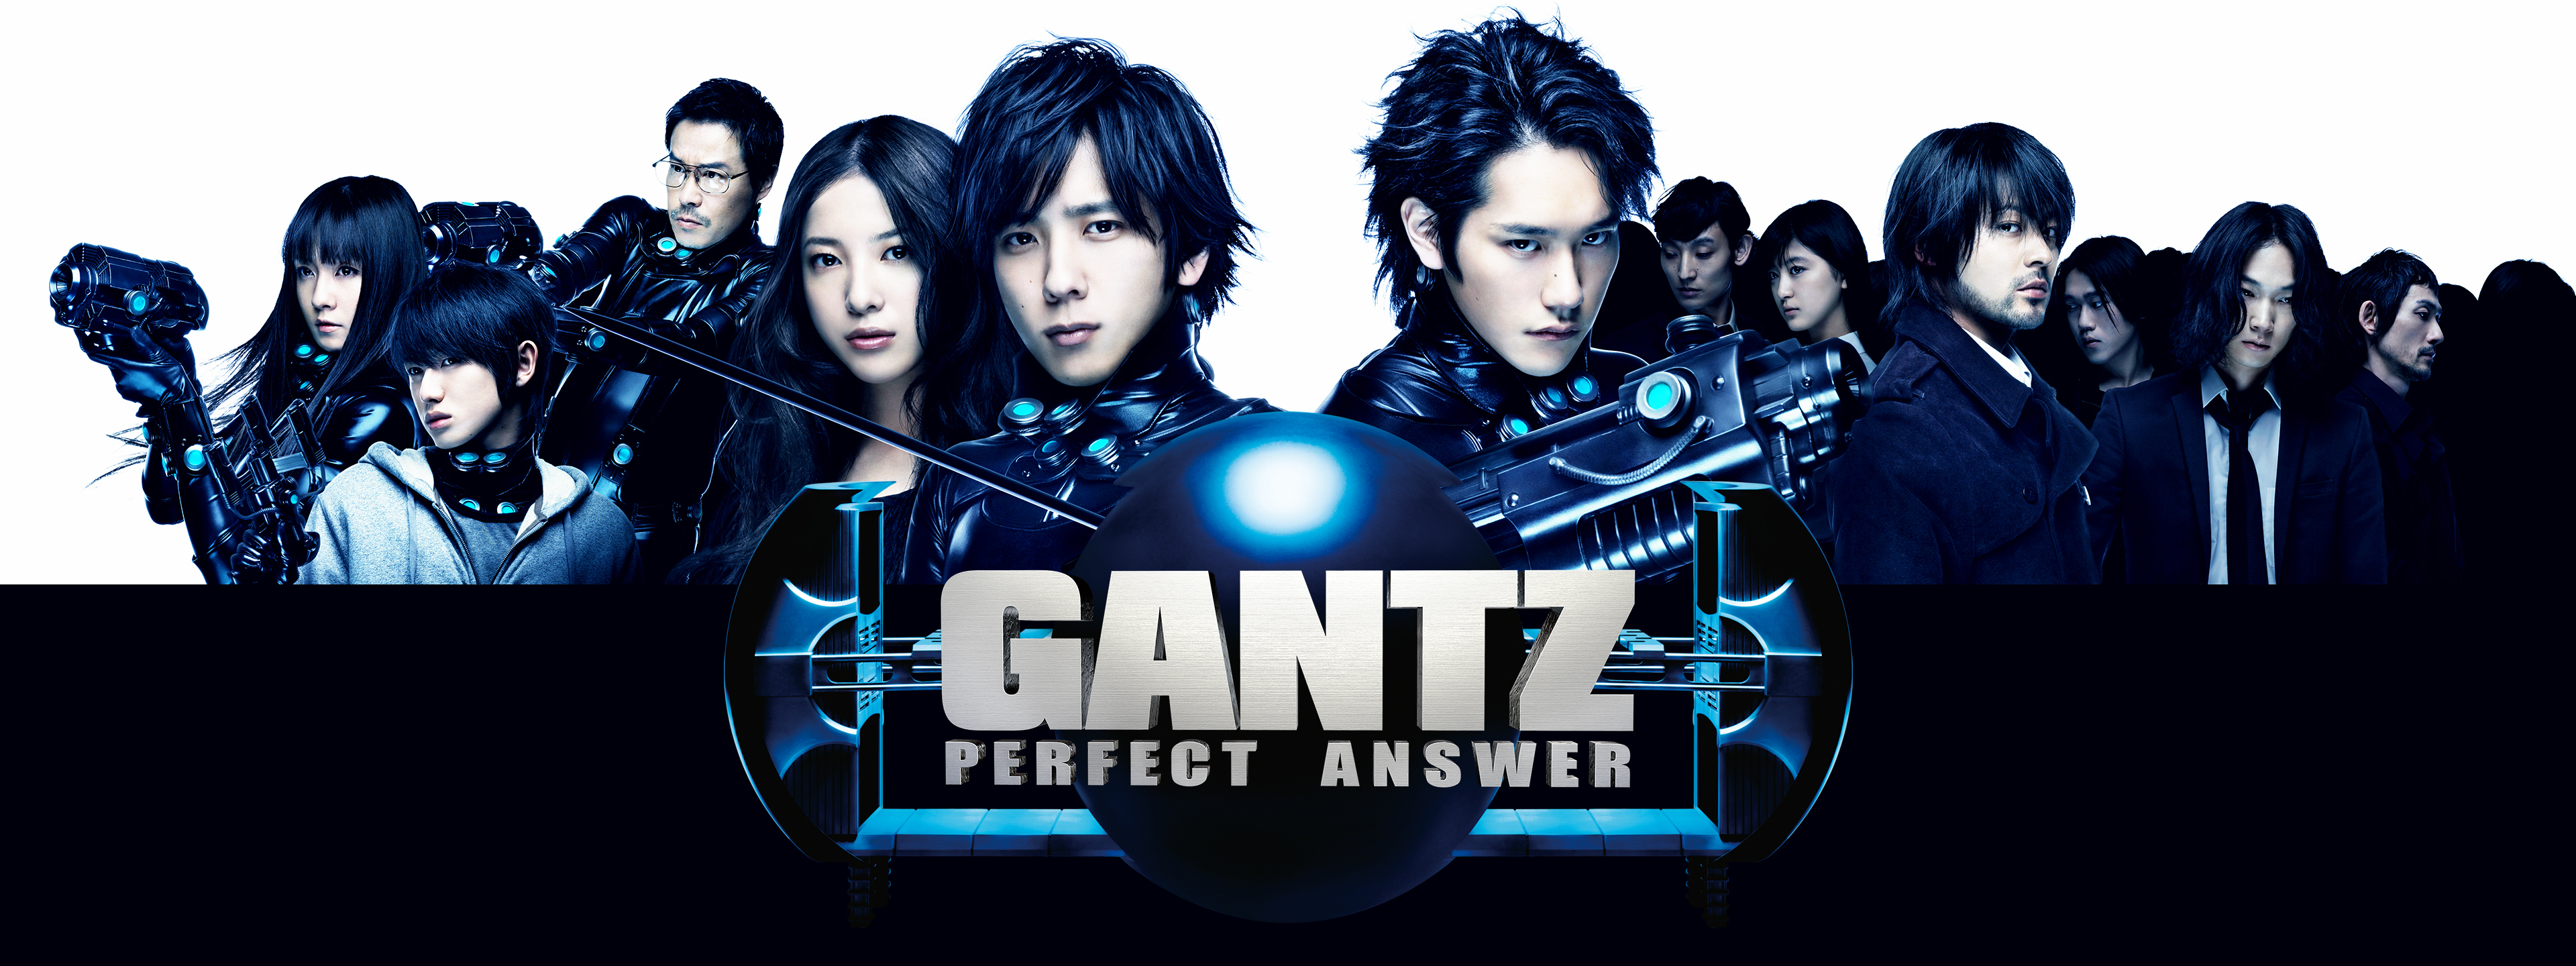 GANTZ PERFECT ANSWER | Hulu(フールー)